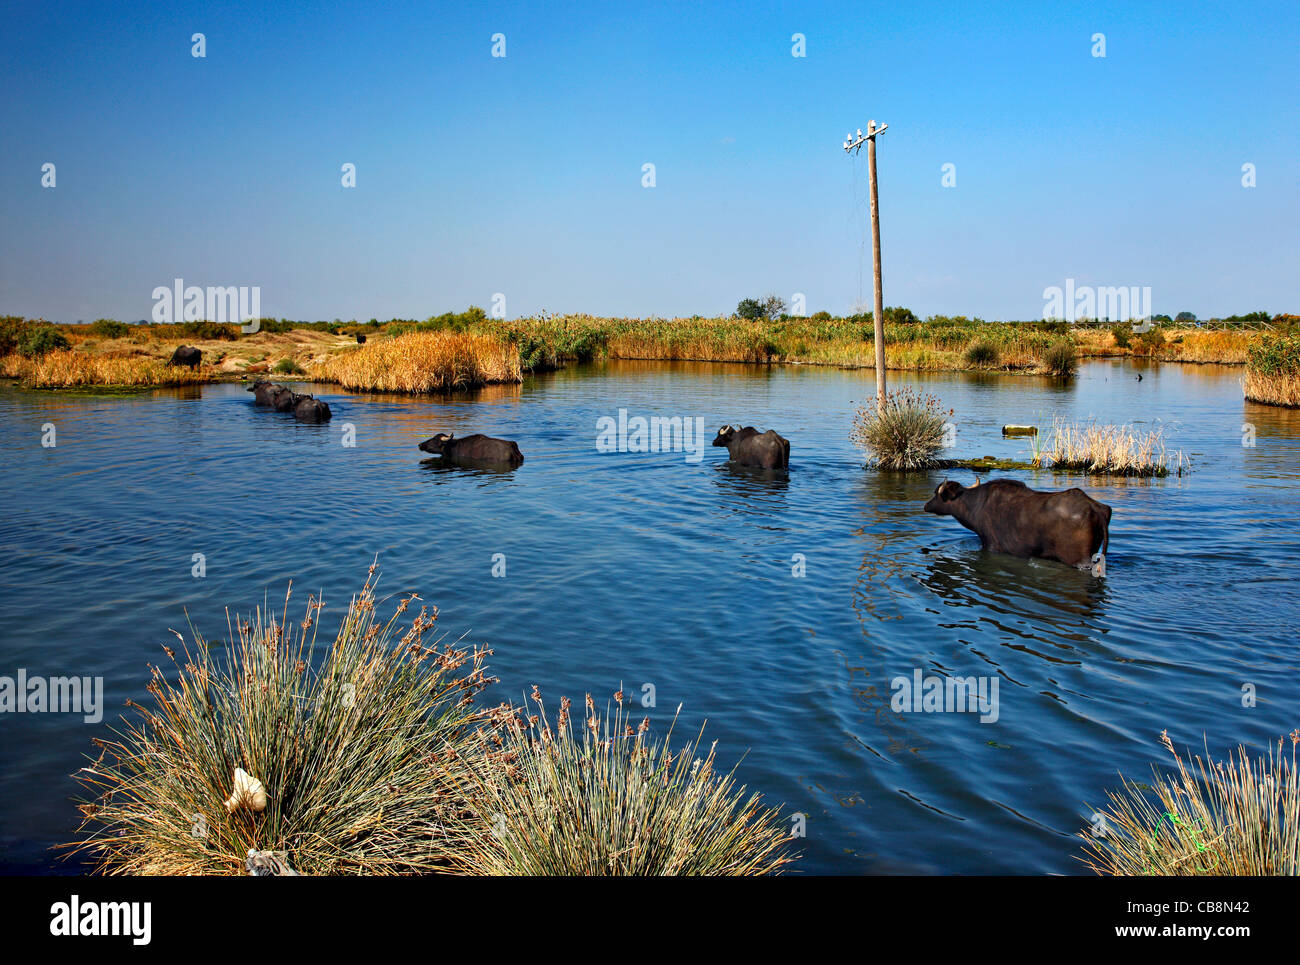 Buffaloes Varcando il fiume Gallikos, vicino al suo delta (estuario), vicino a Salonicco, Macedonia, Grecia Foto Stock